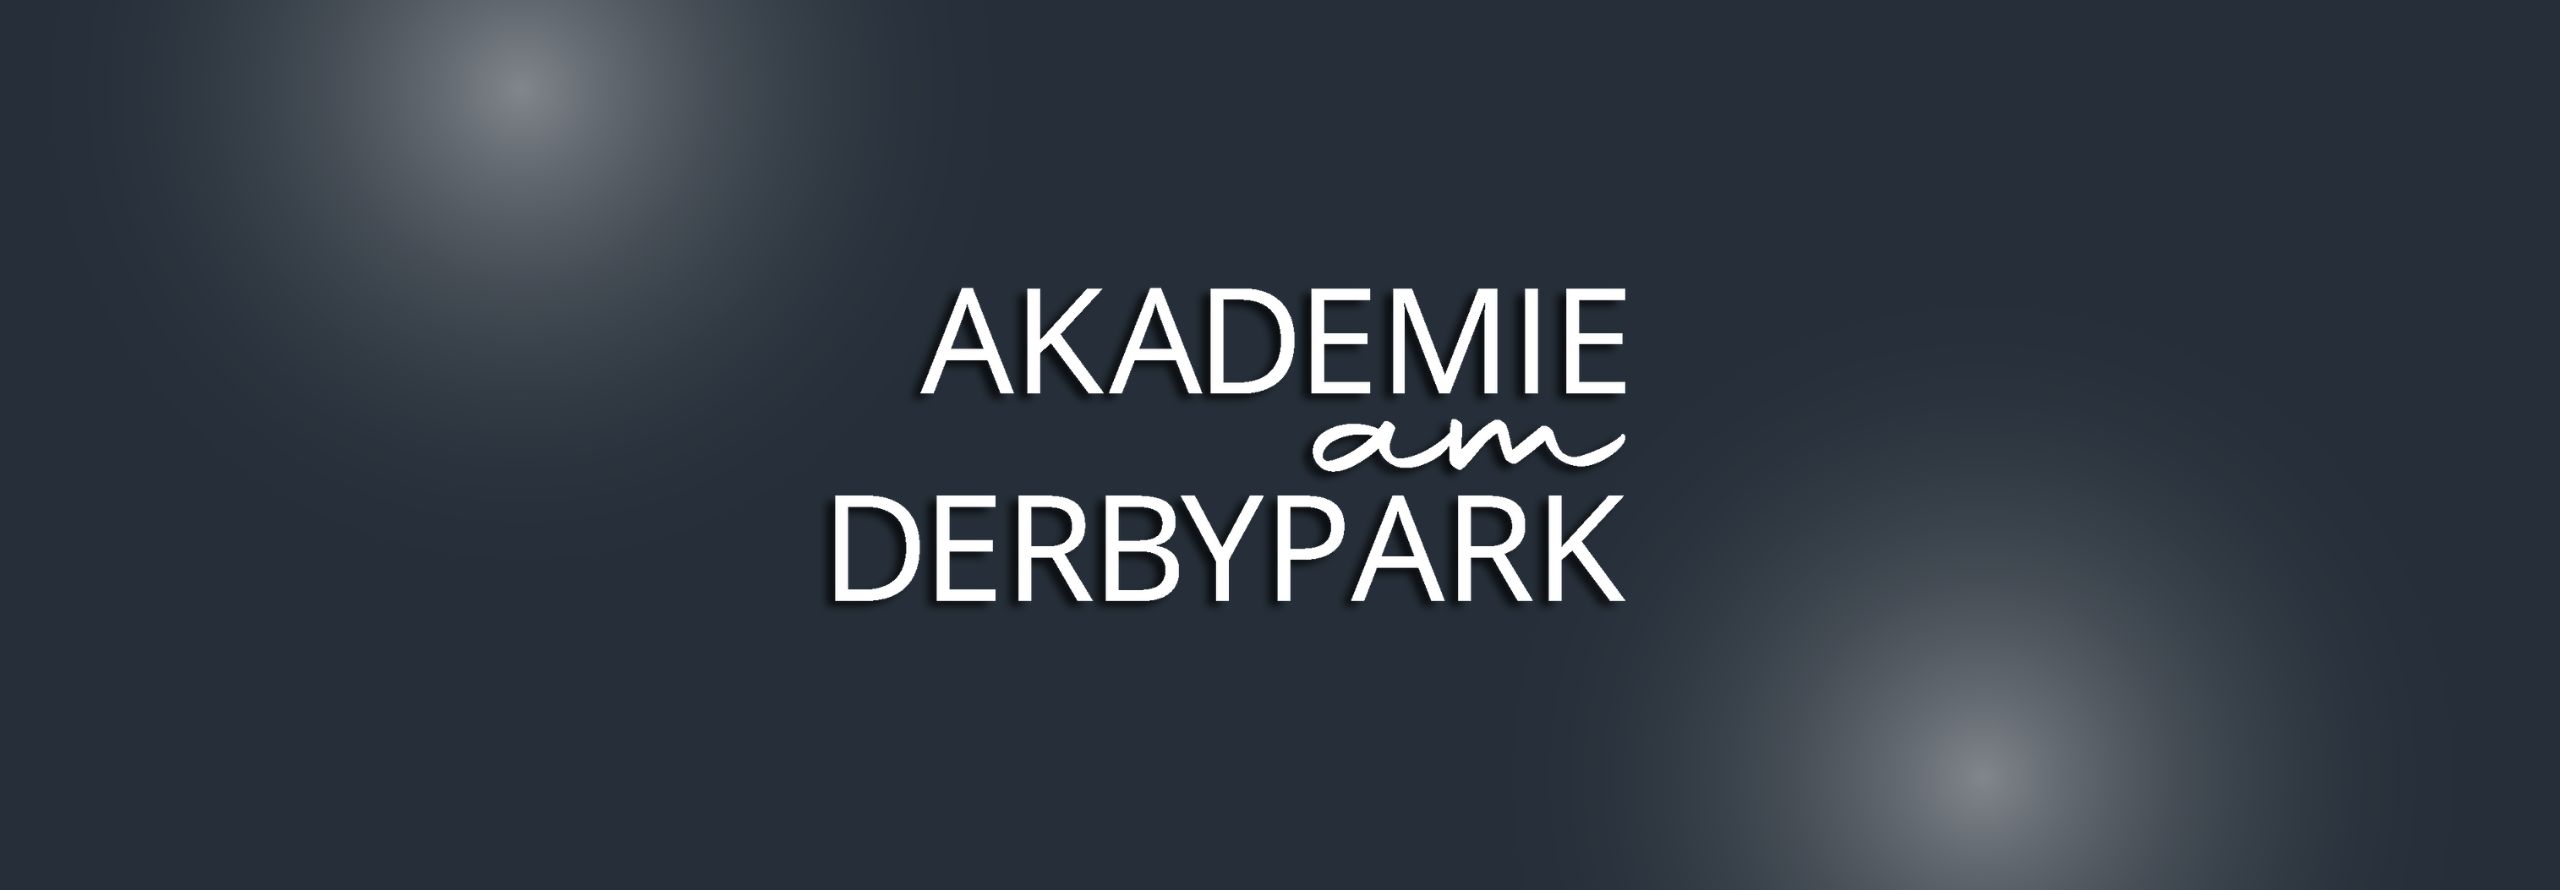 Akademie am Derbypark